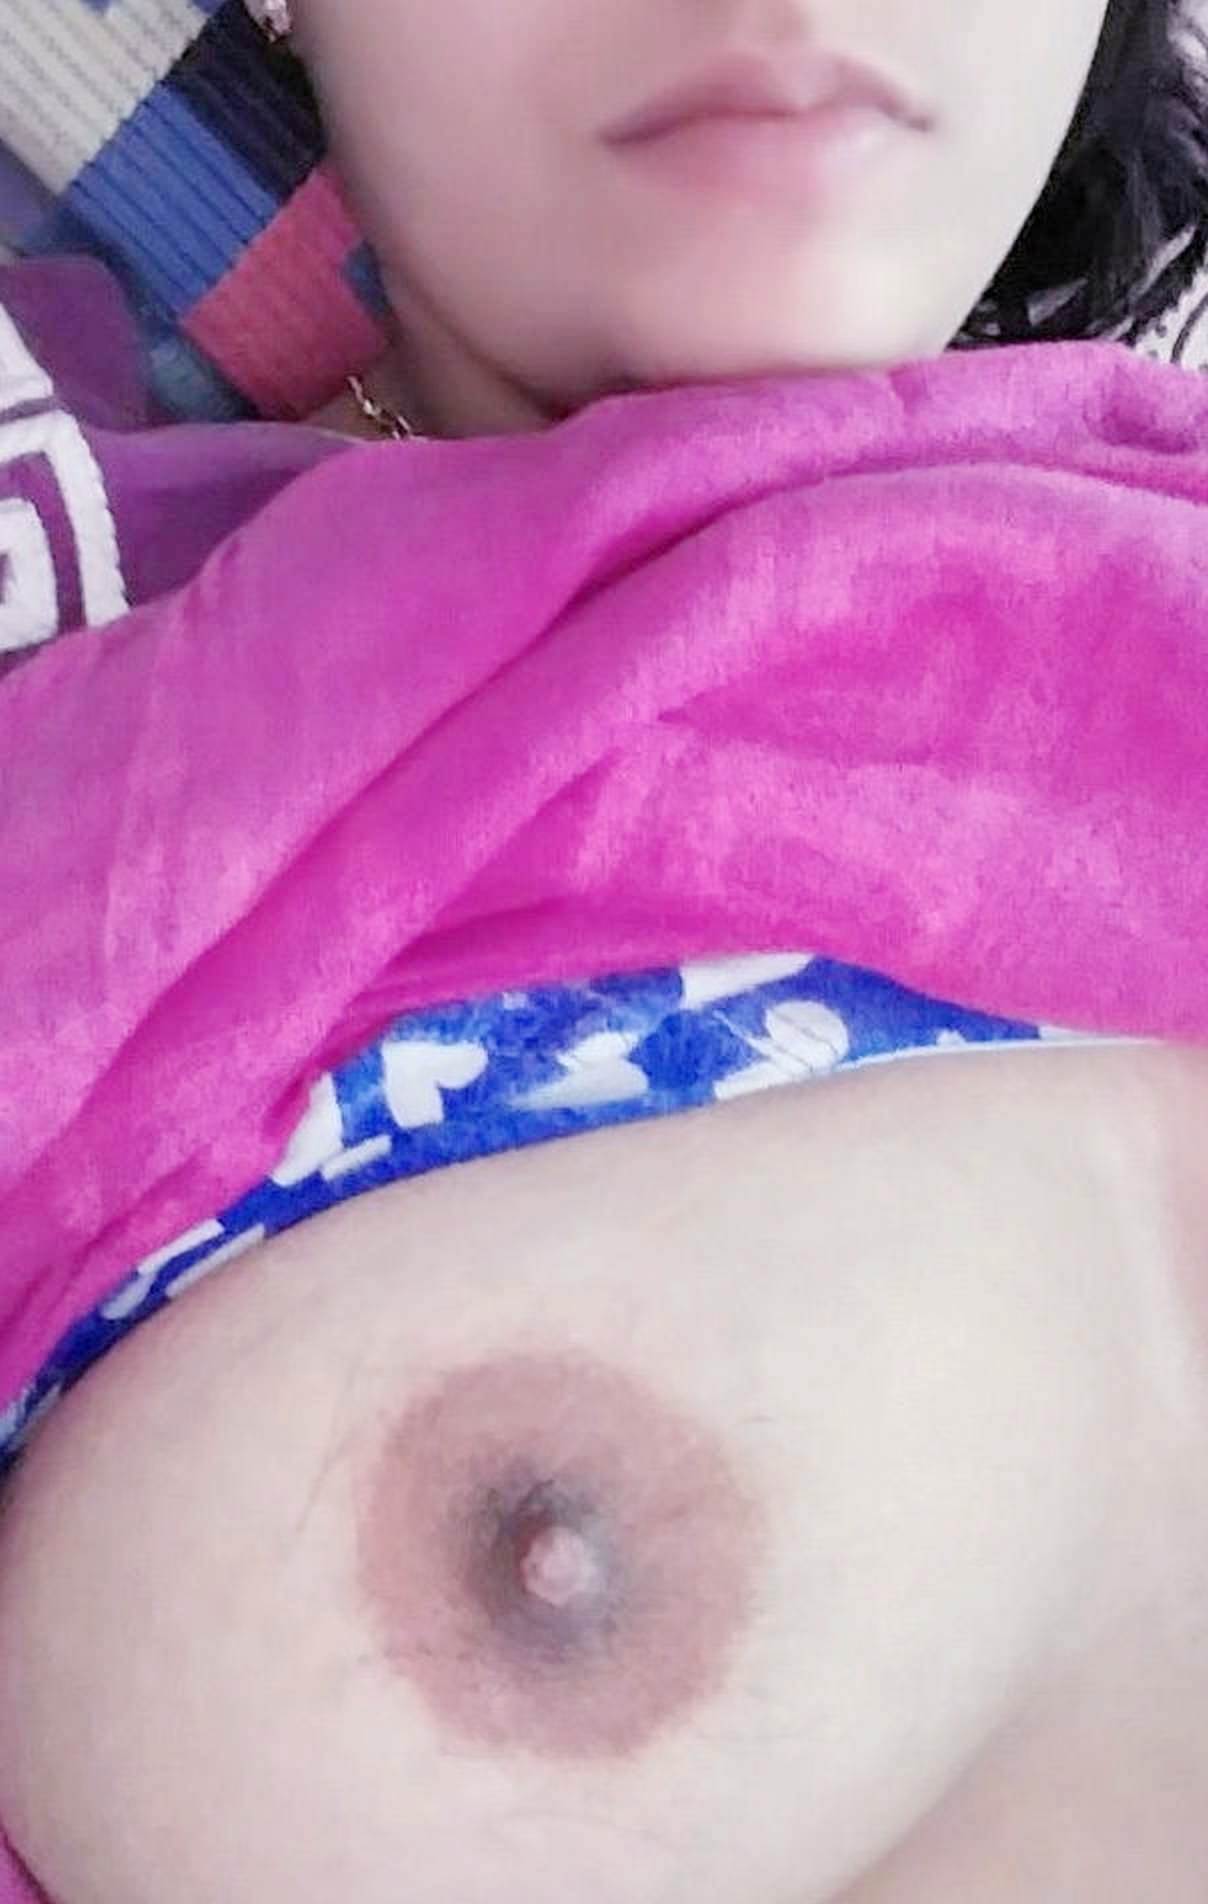 Jammu sex video